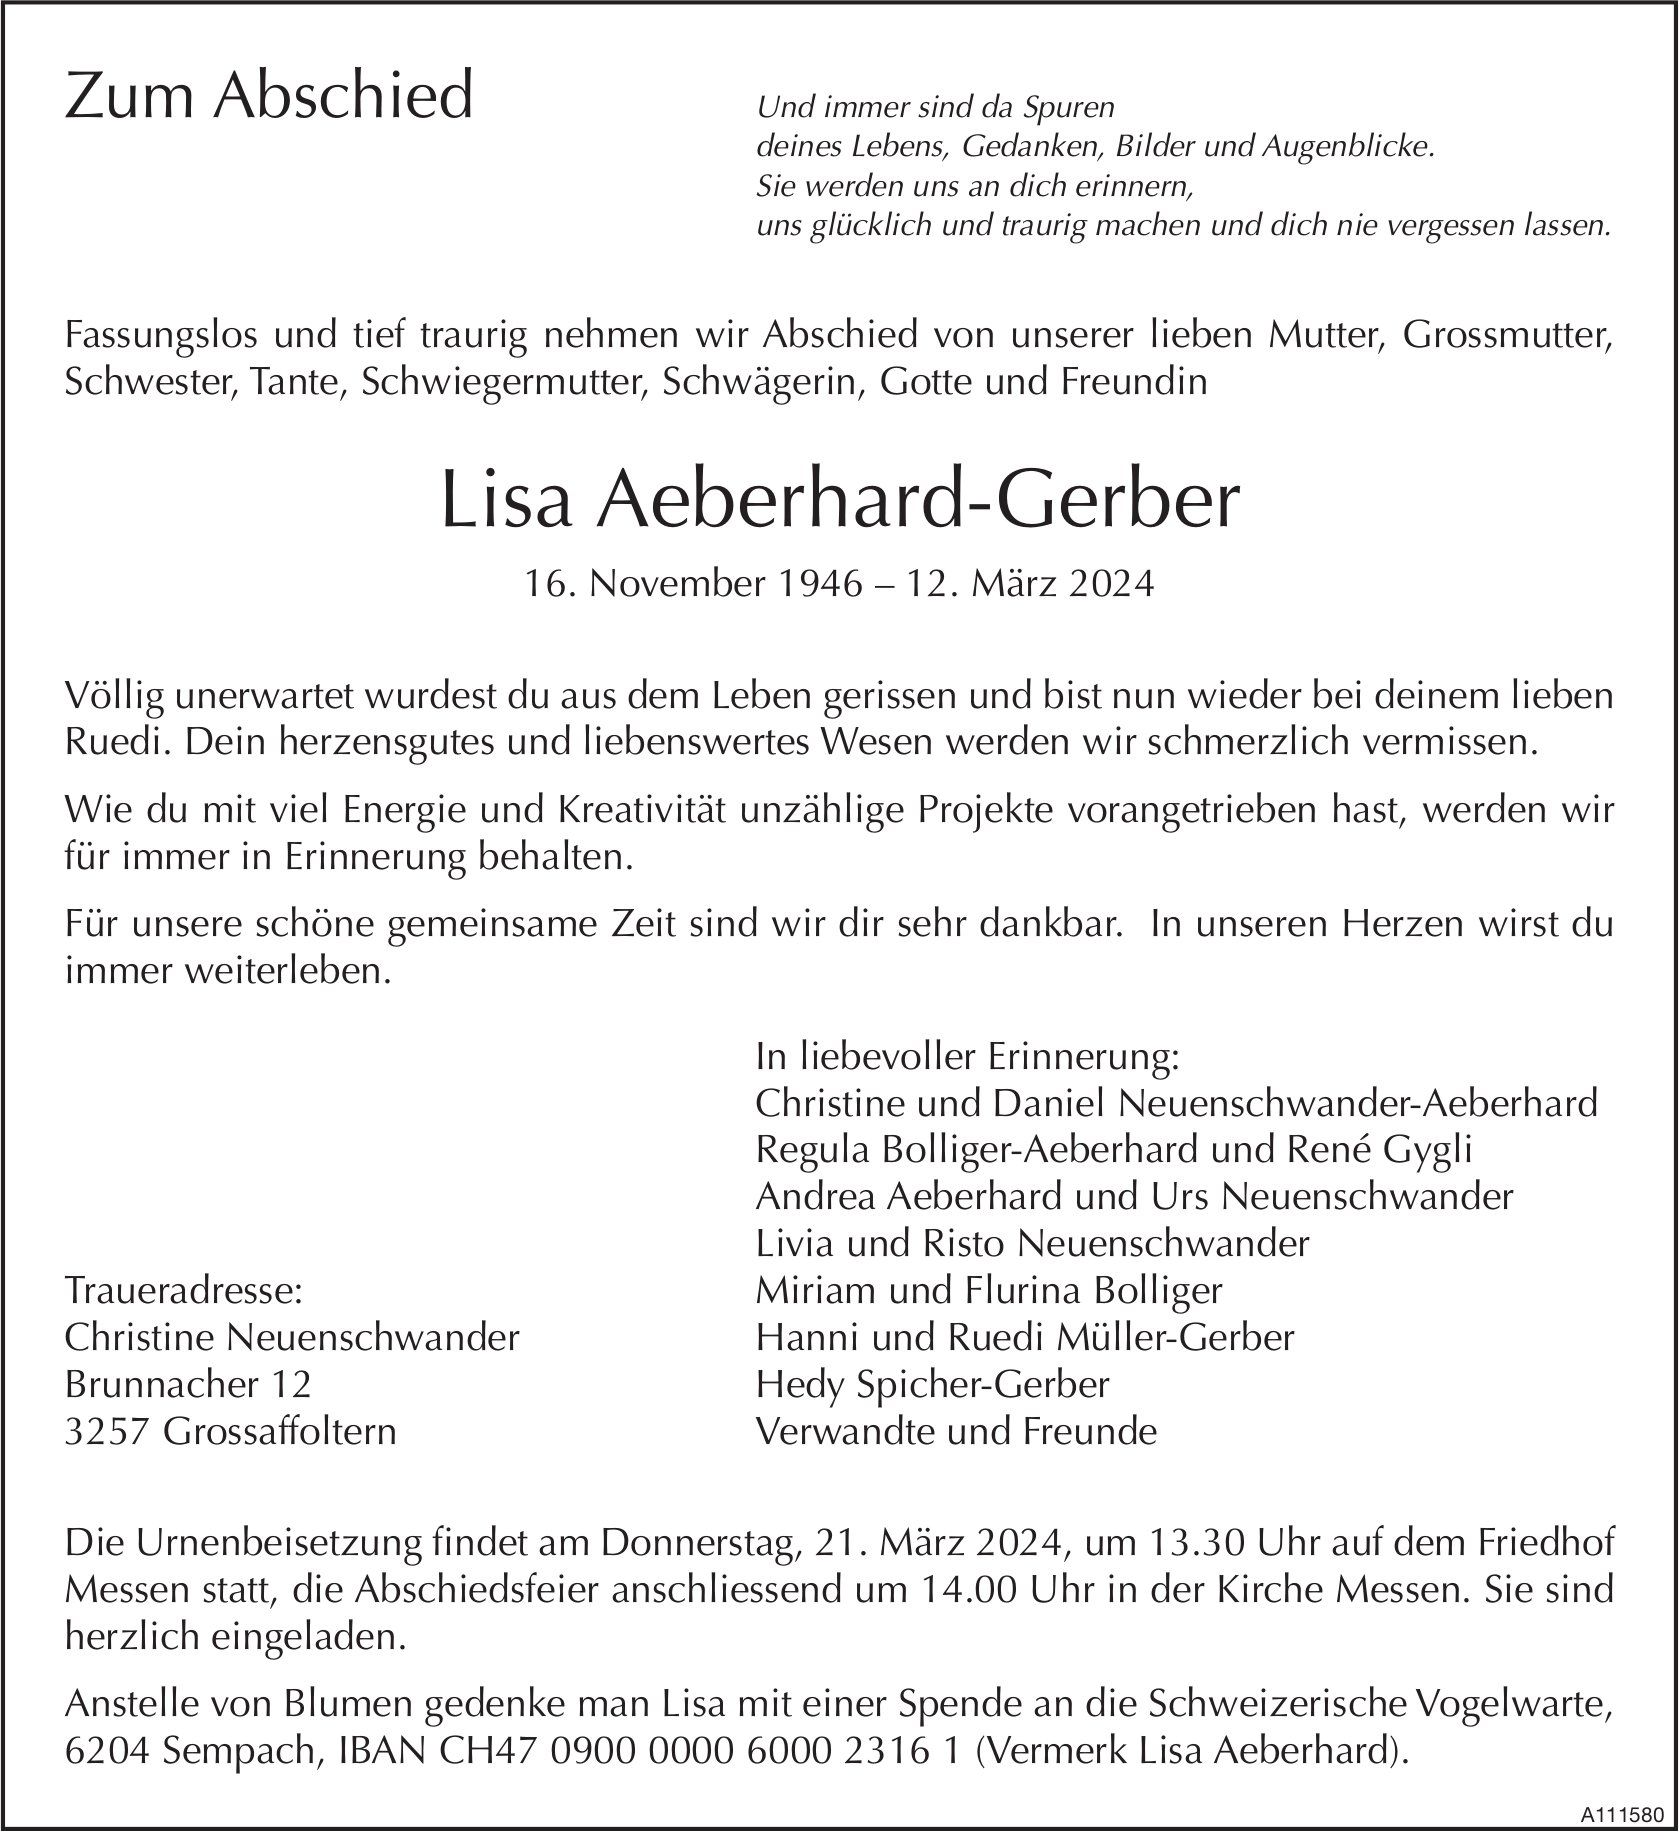 Lisa Aeberhard-Gerber, März 2024 / TA